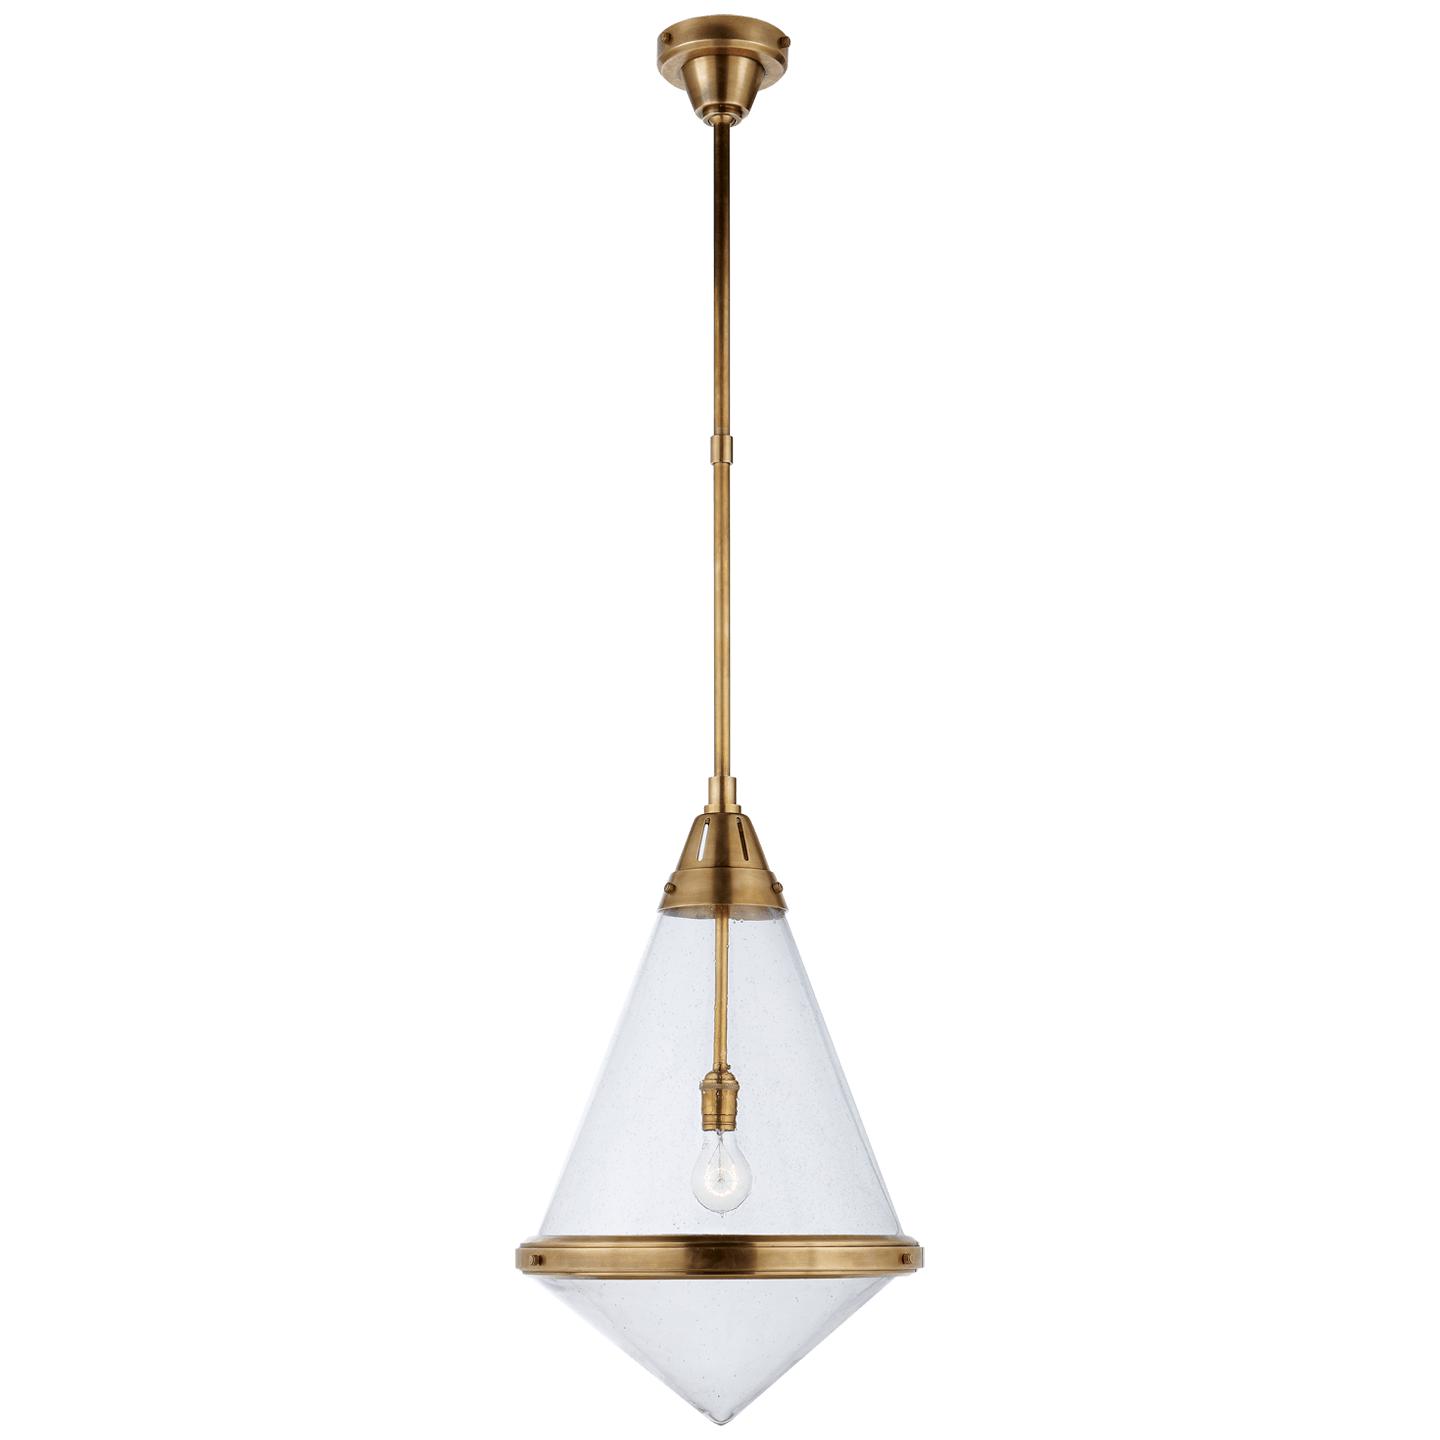 Купить Подвесной светильник Gale Large Pendant в интернет-магазине roooms.ru